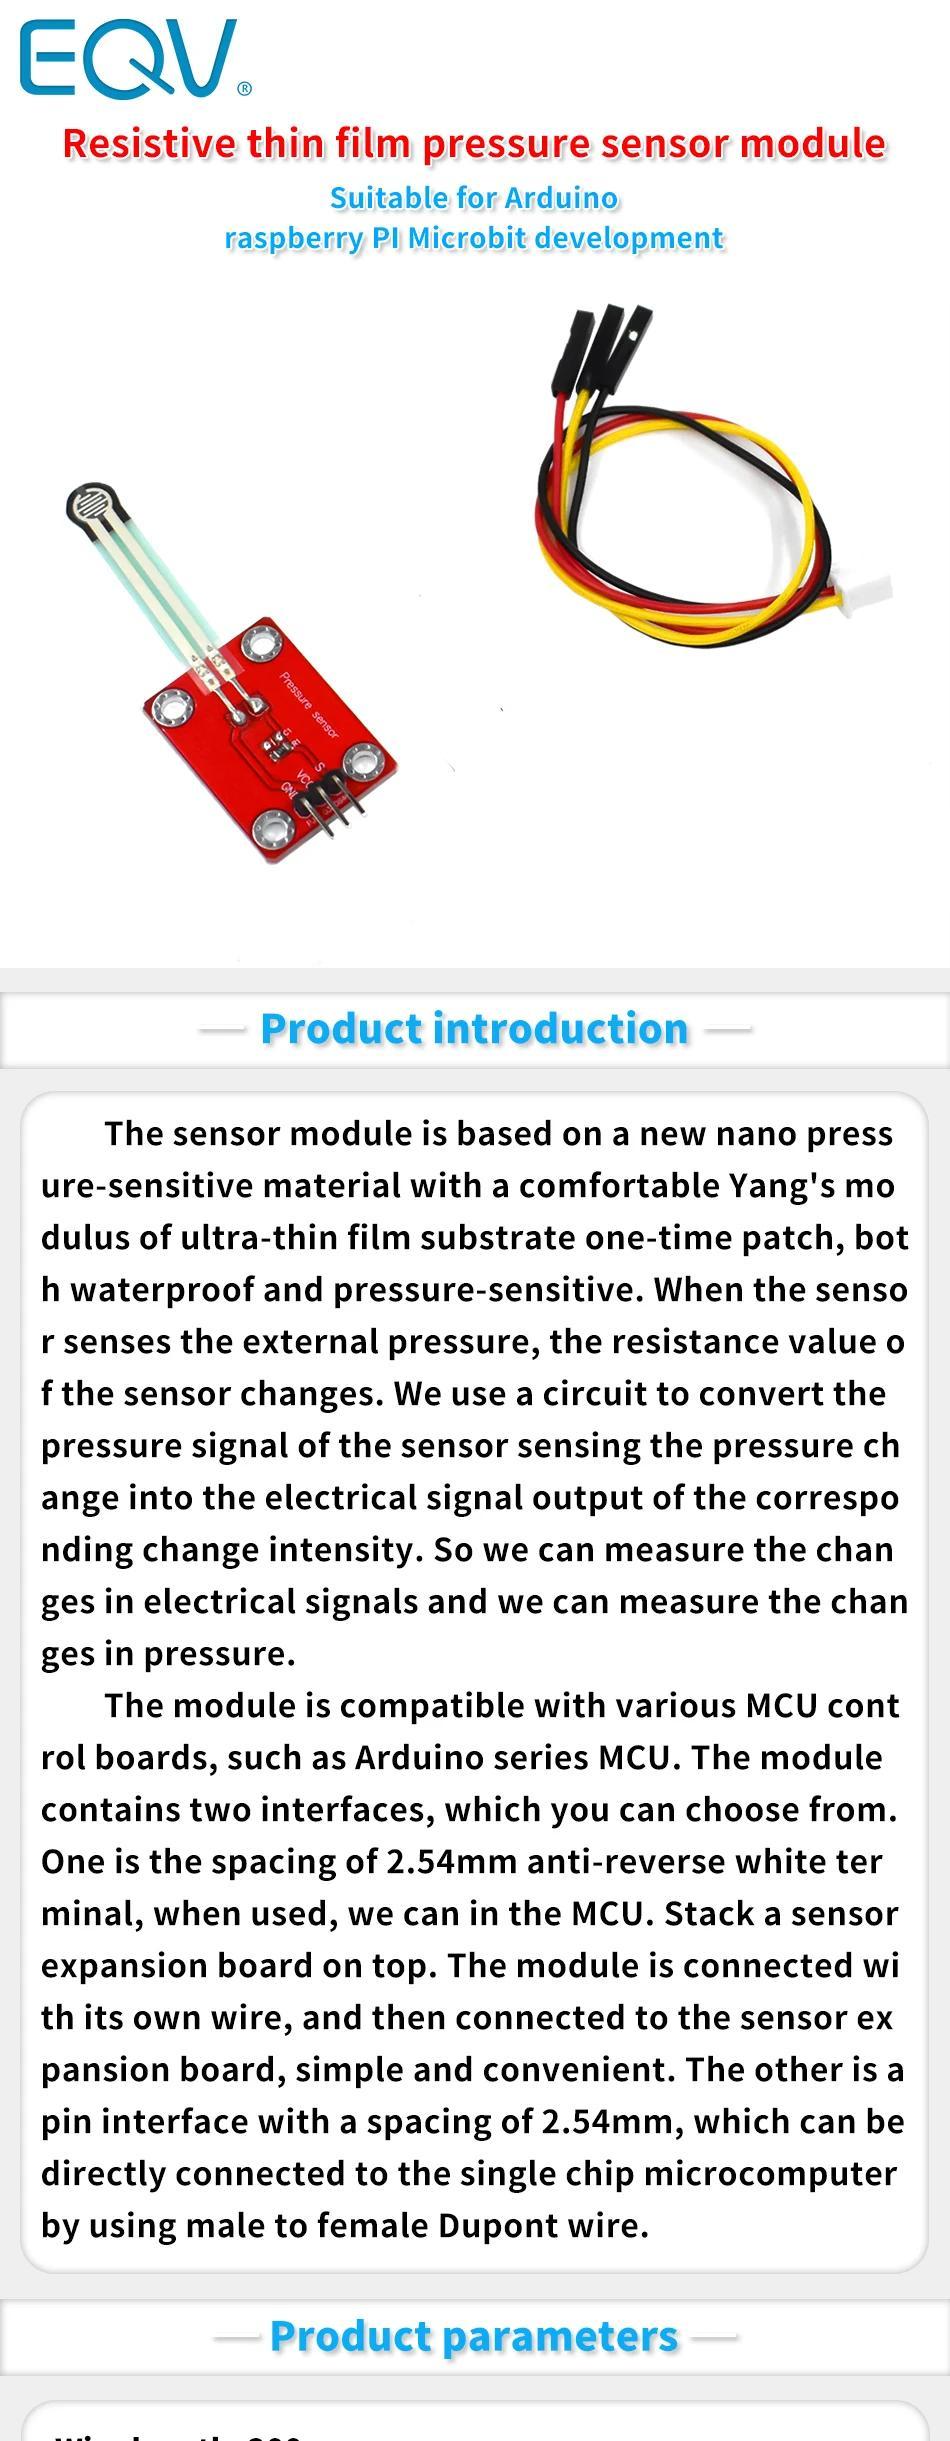 Pressure Sensor